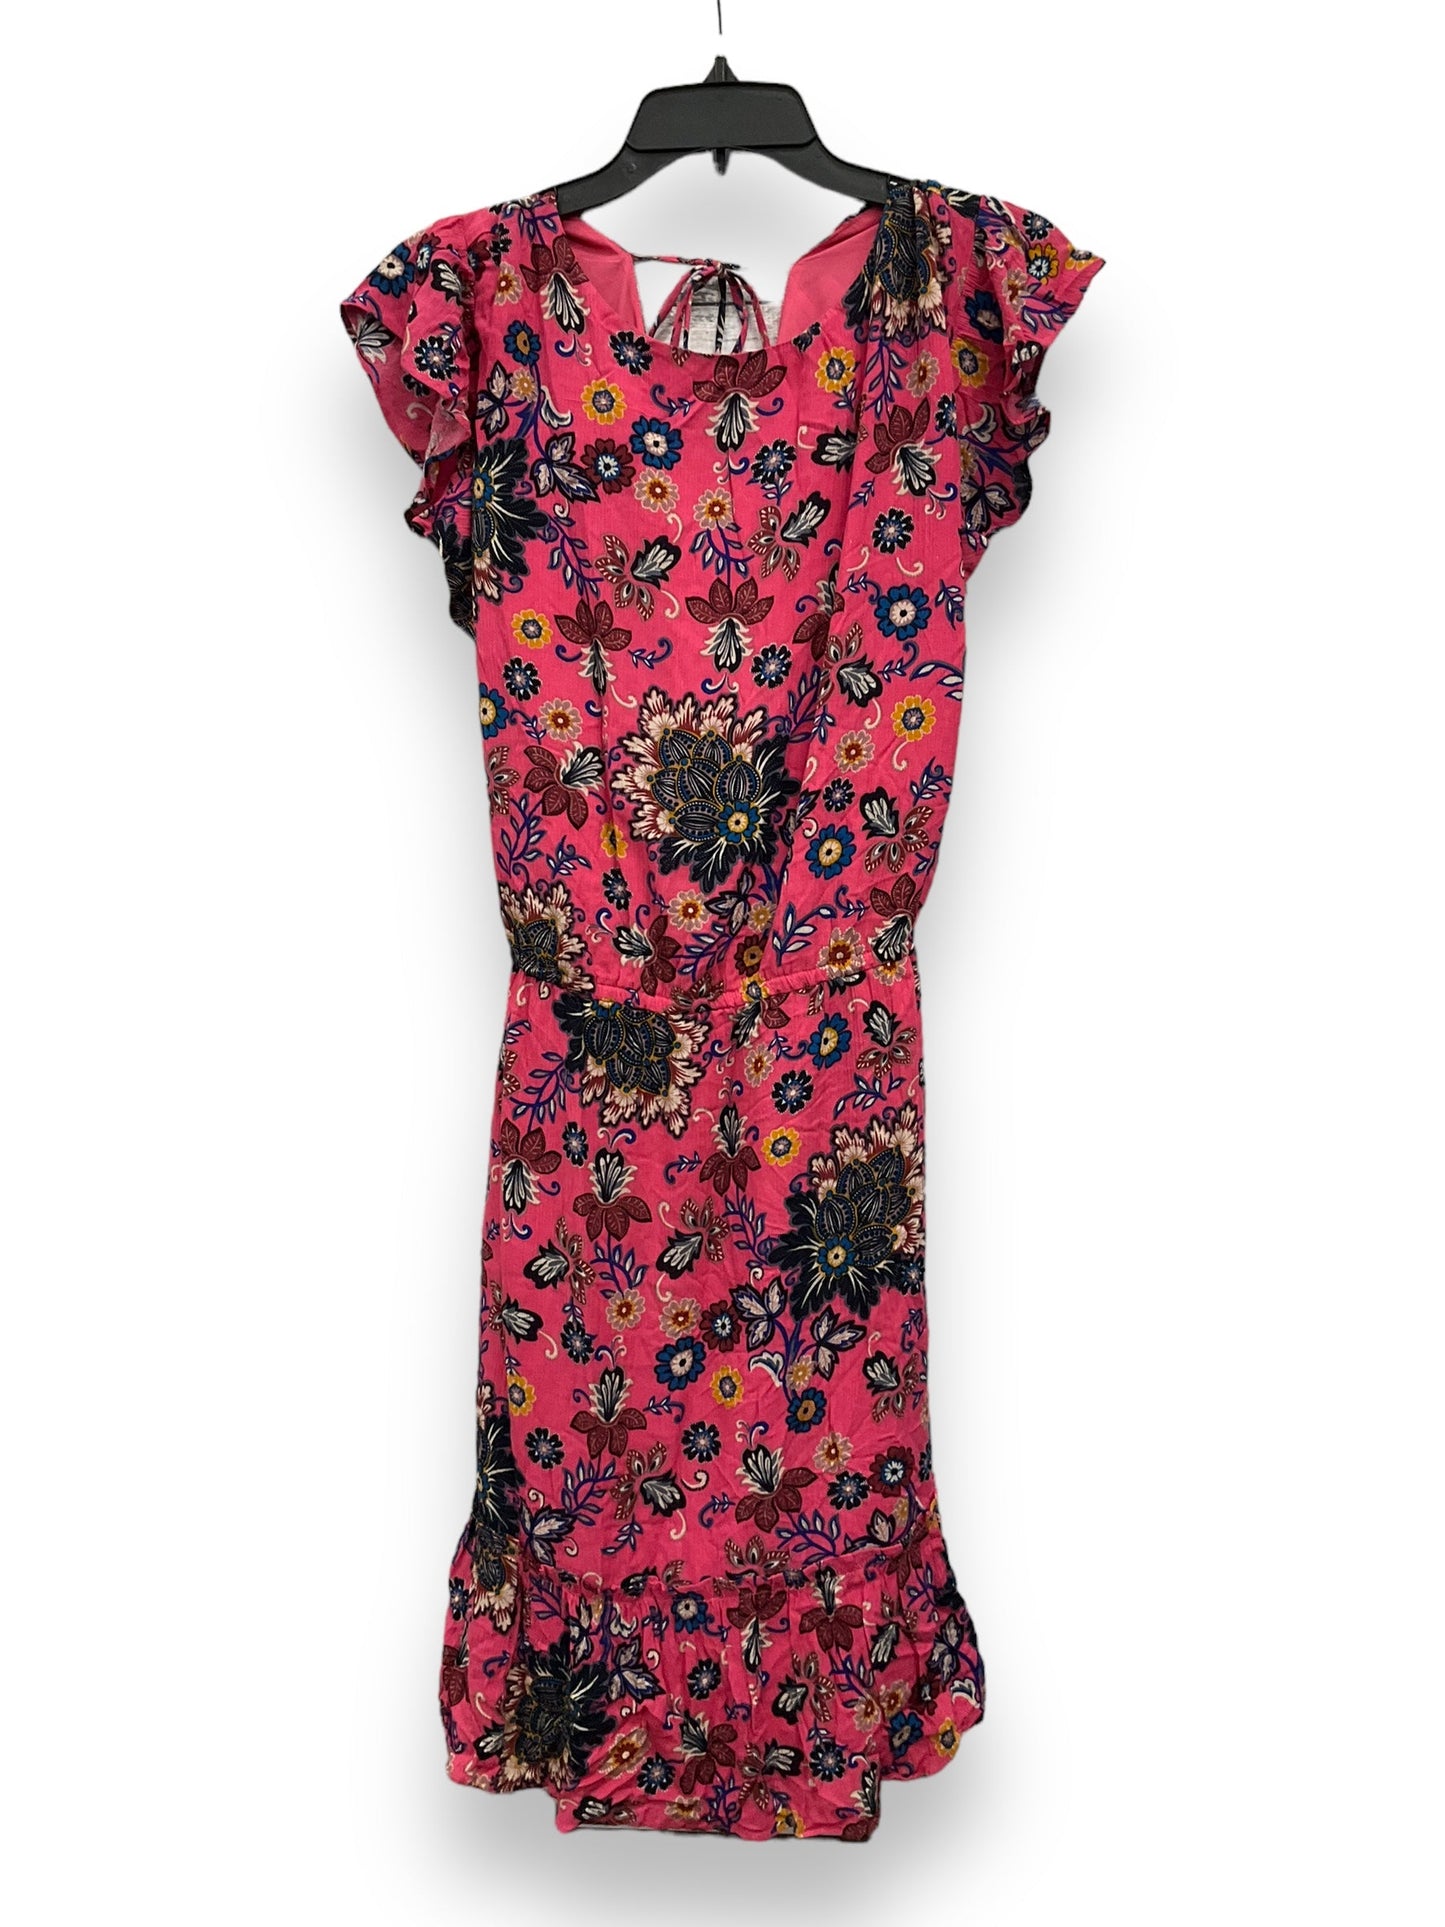 Floral Print Dress Casual Short Loft, Size 3x